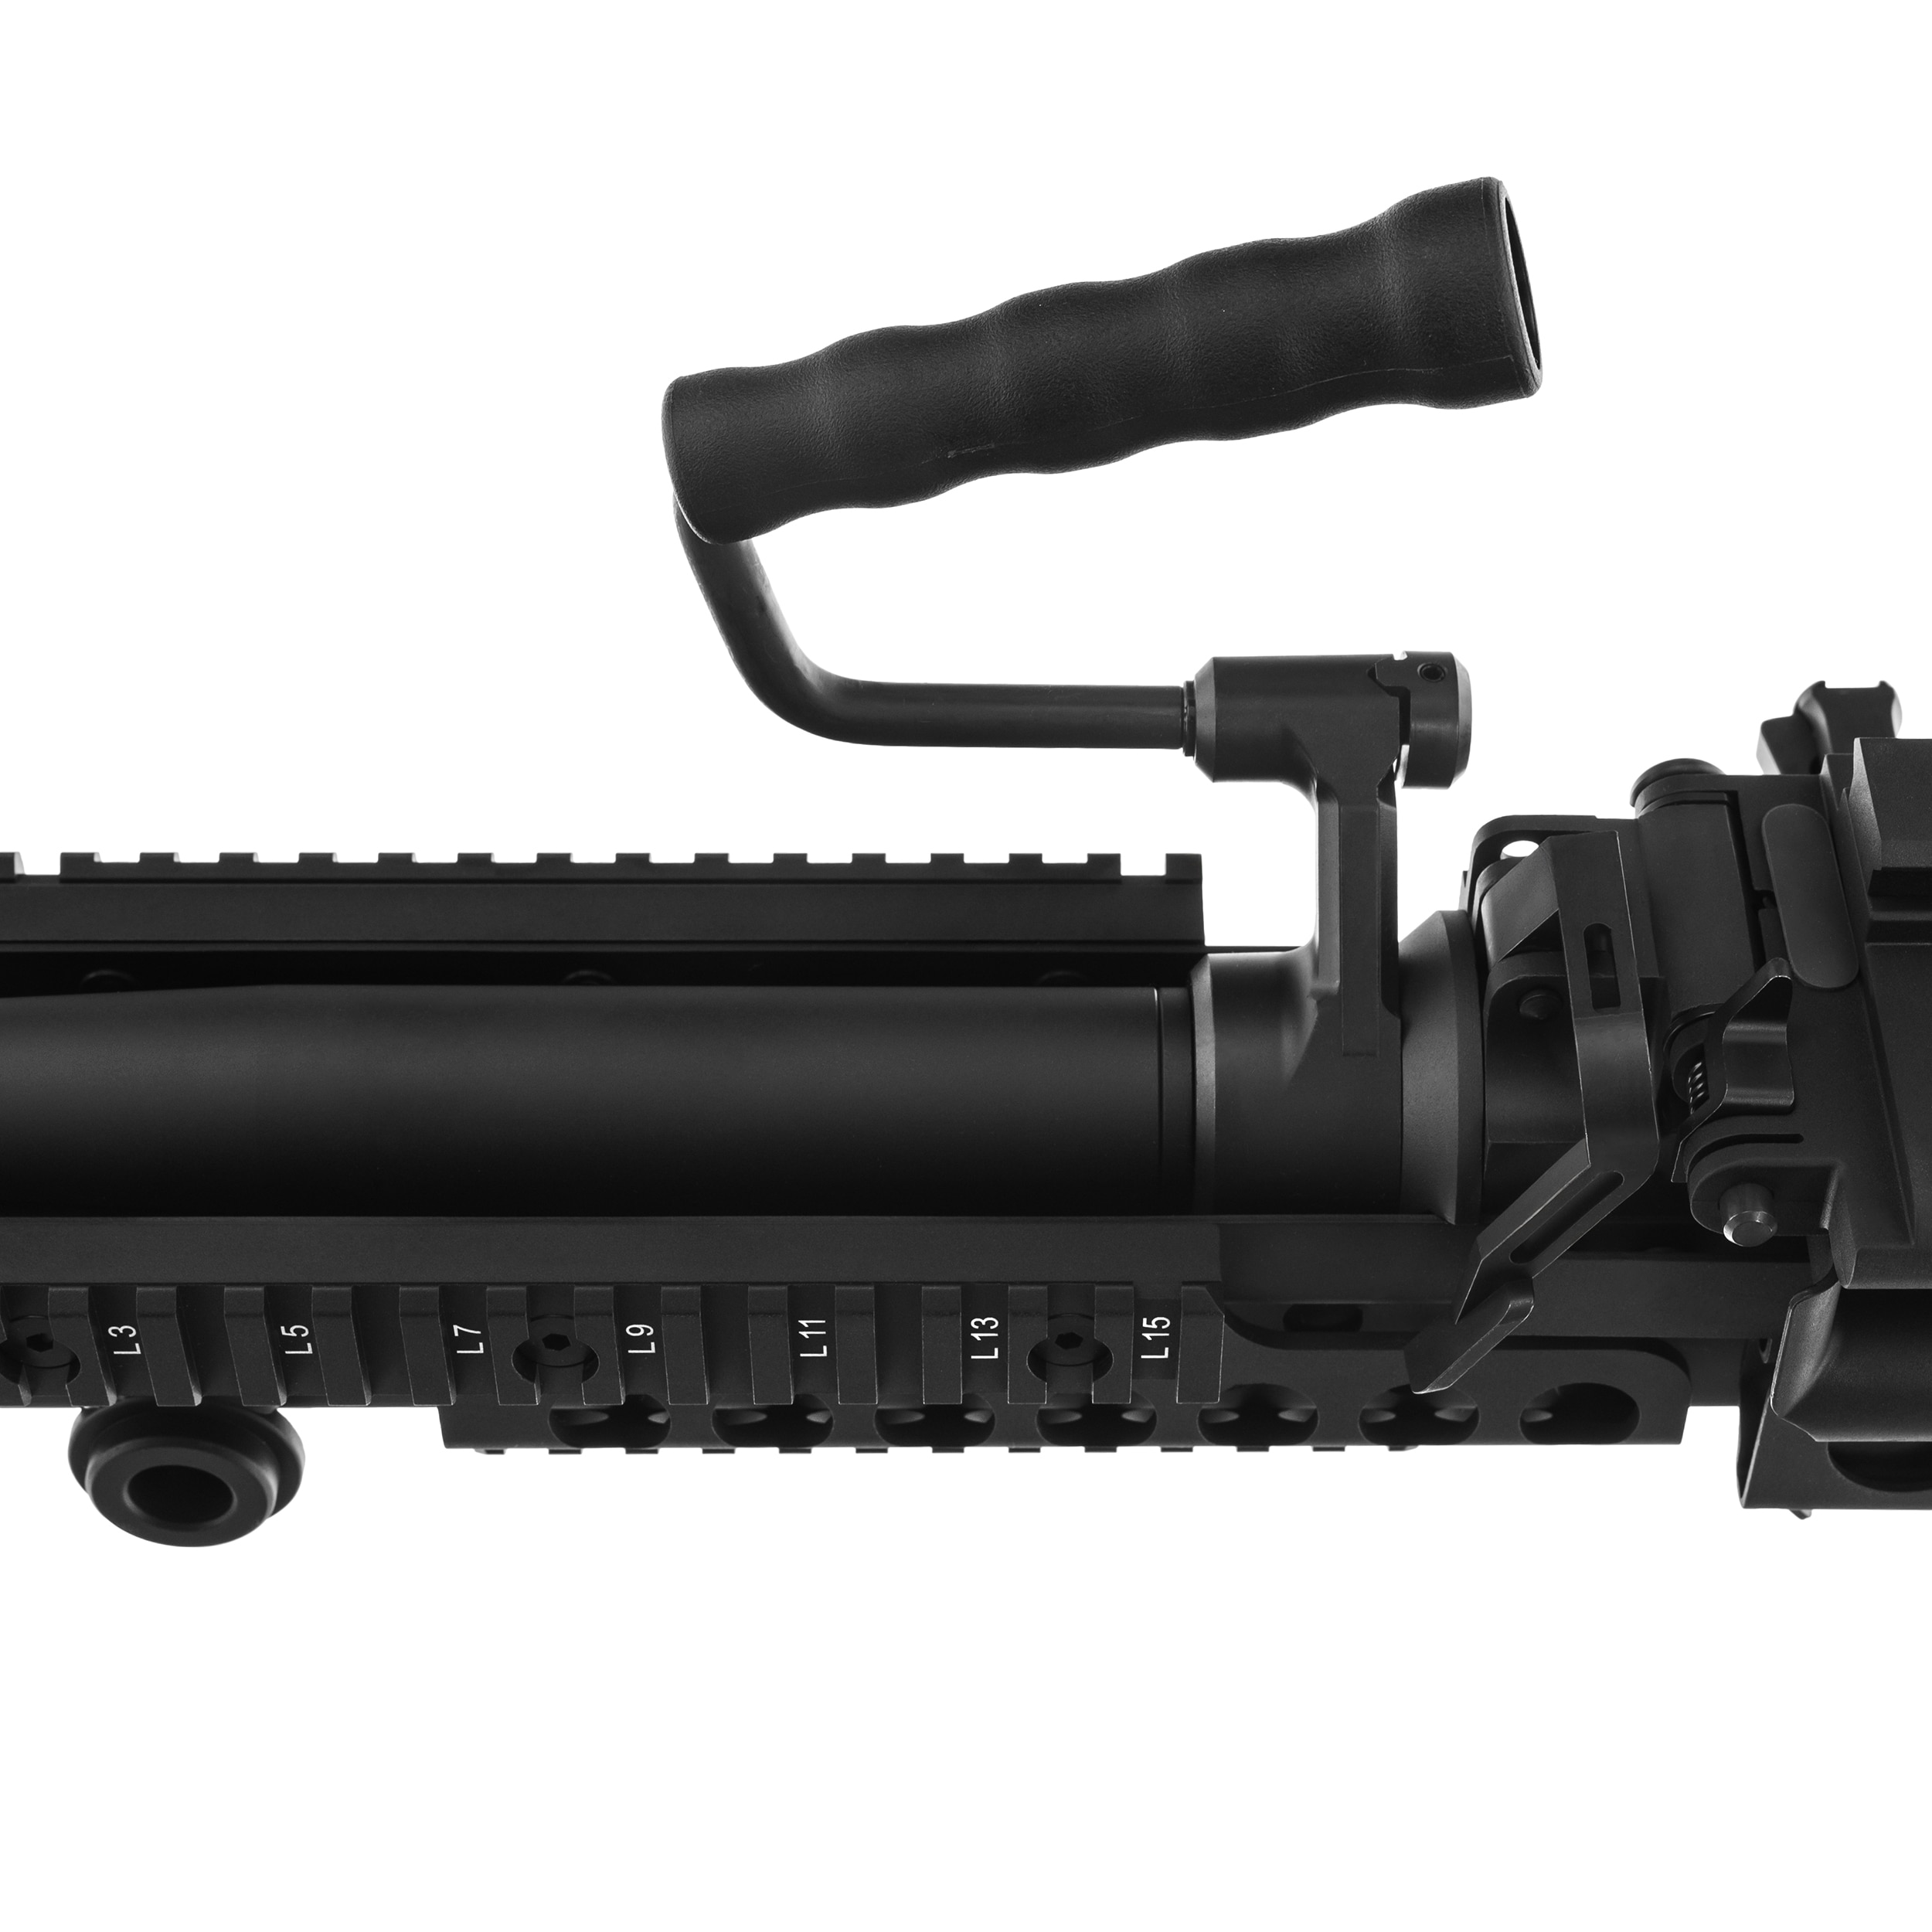 Пістолет-кулемет AEG Cybergun FN MK48 - Black